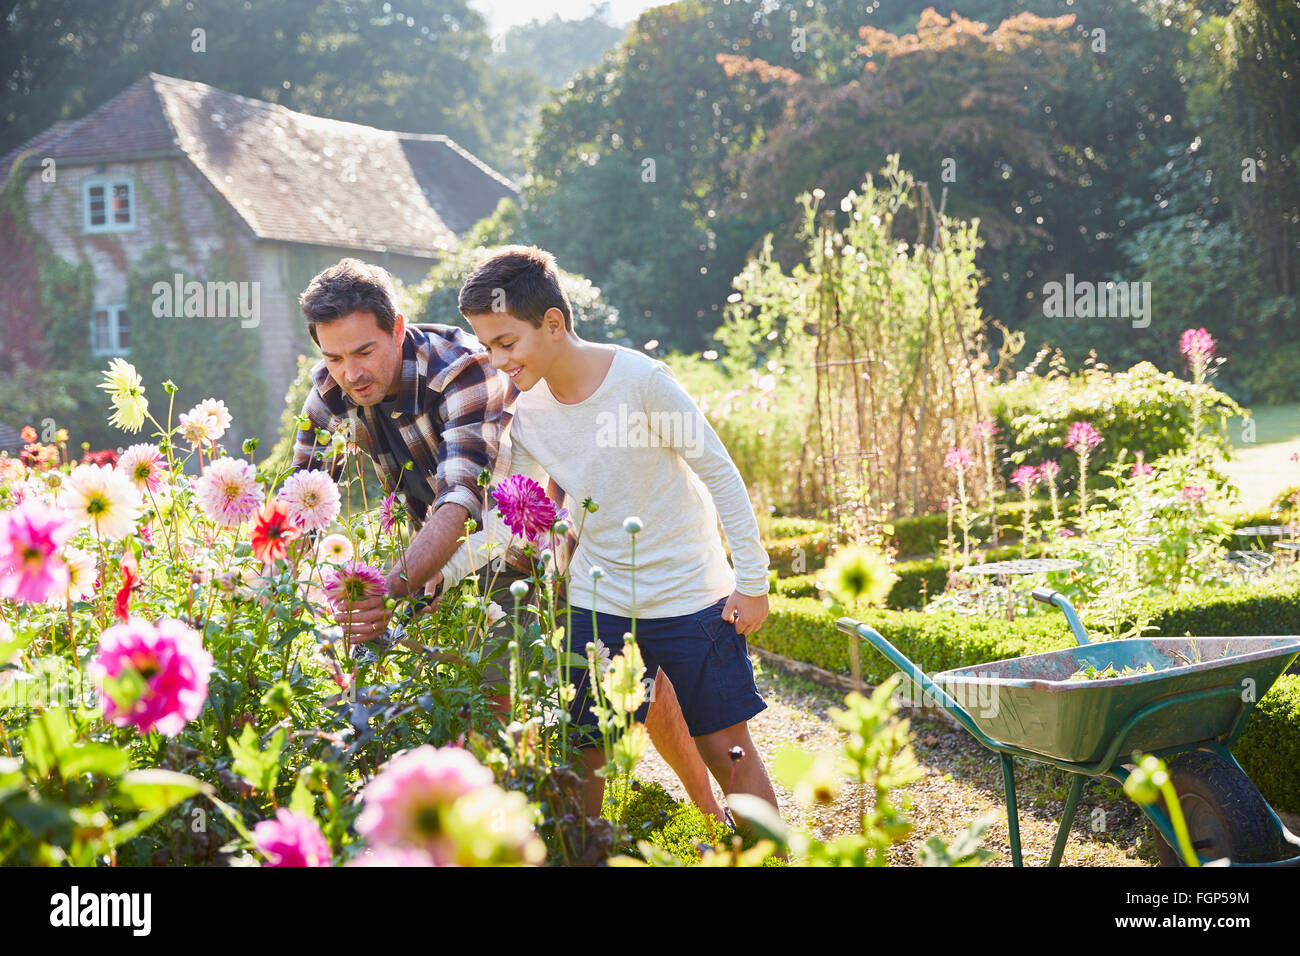 Vater und Sohn im sonnigen Garten Blumen pflücken Stockfoto